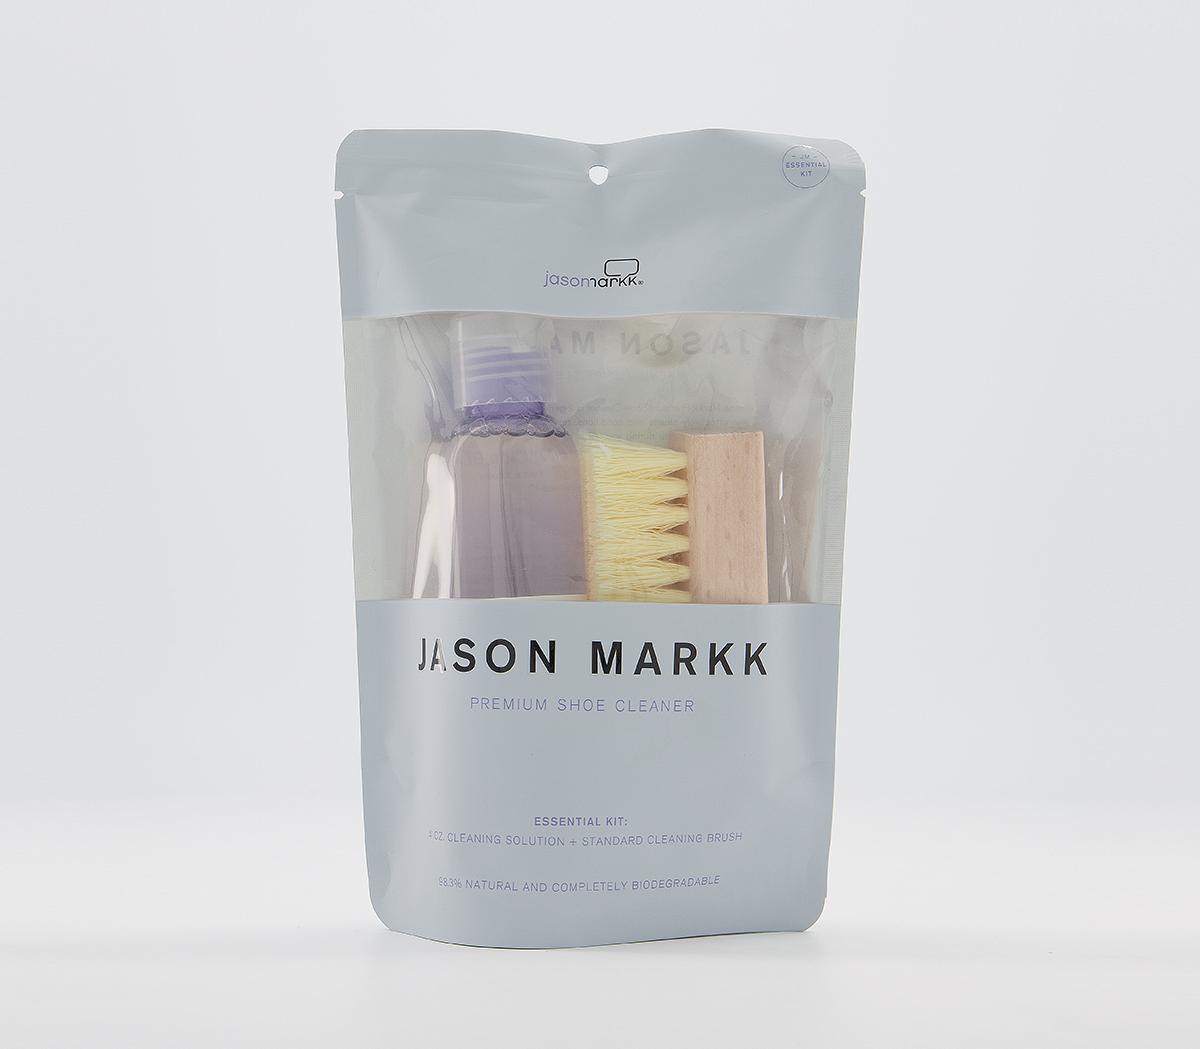 JASON MARKKPremium Shoe Cleaning Product4 Oz Premium Shoe Cleaning Product